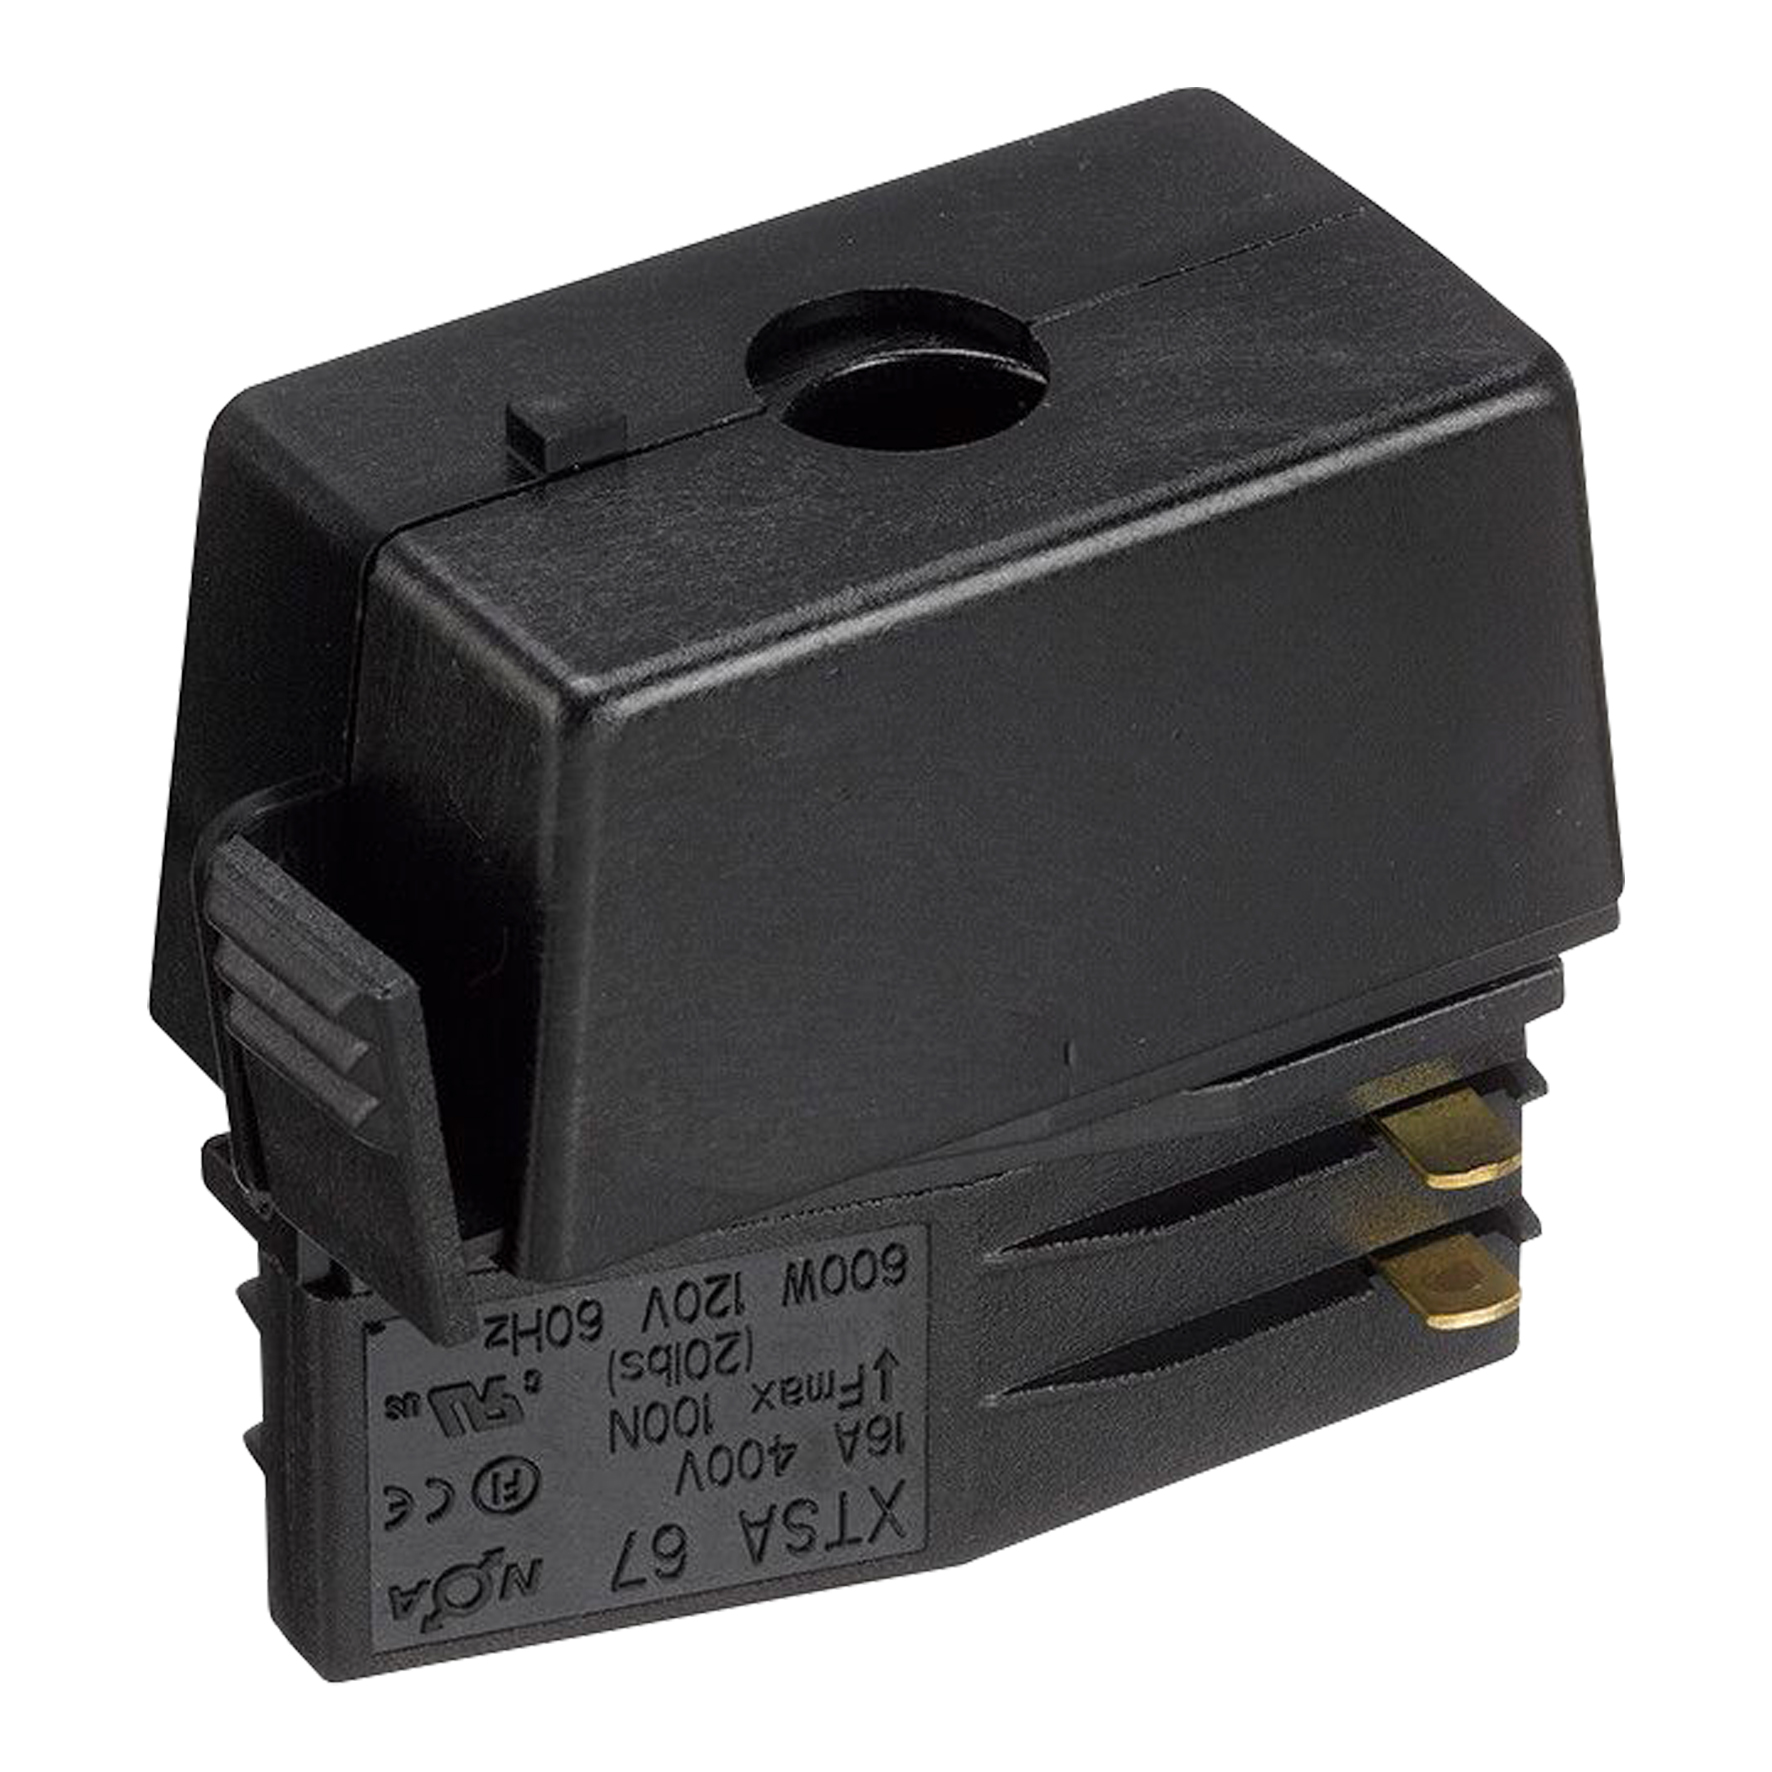 XTSA 67-2 Adapter Black 3-Circuit